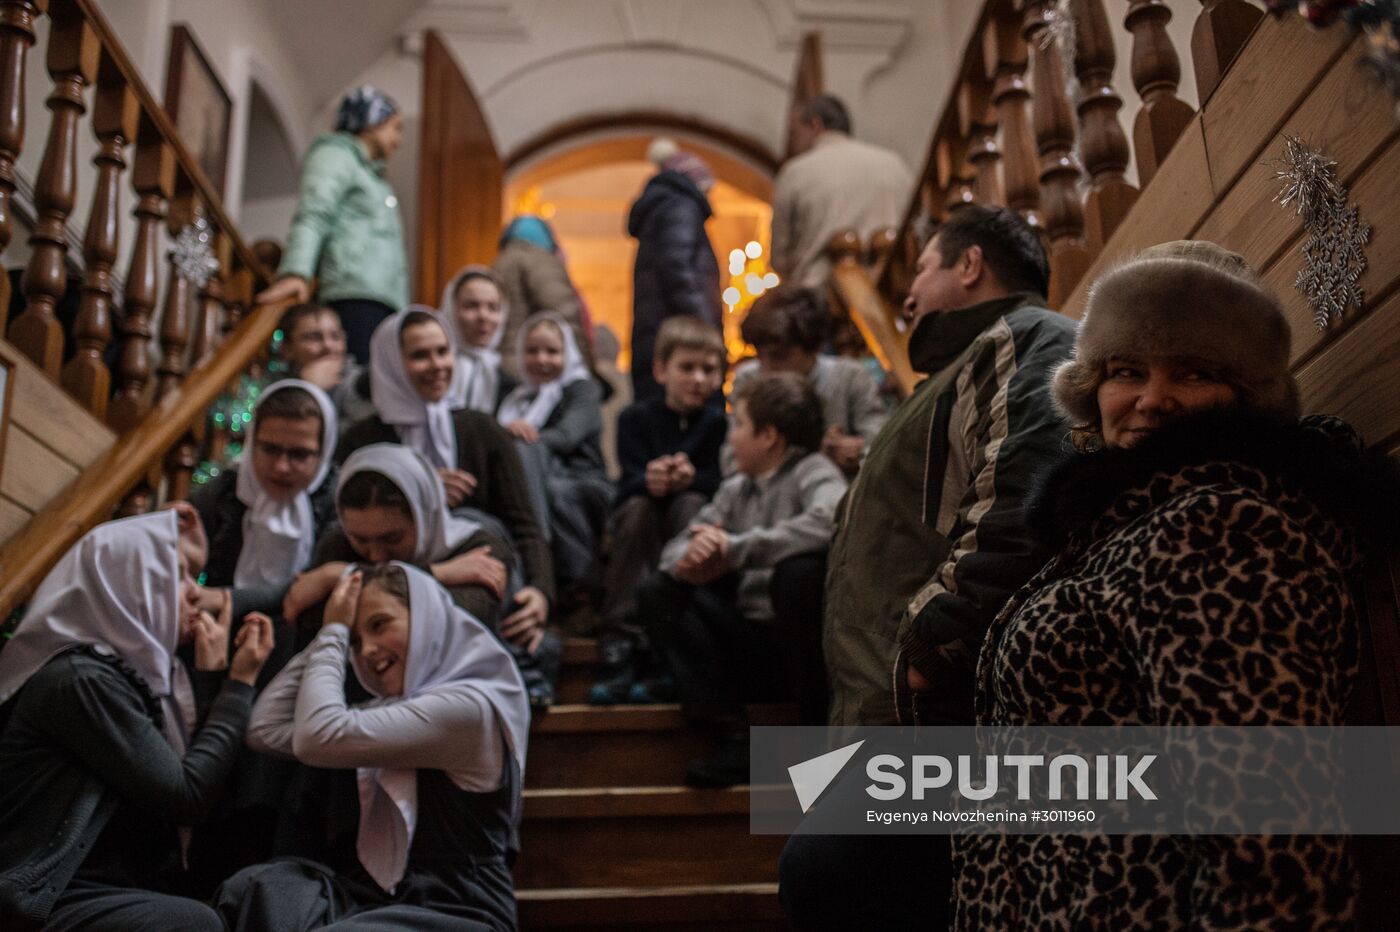 Epiphany Day celebrations at the Zhiten/Nativity of the Mother of God Convent in Ostashkov